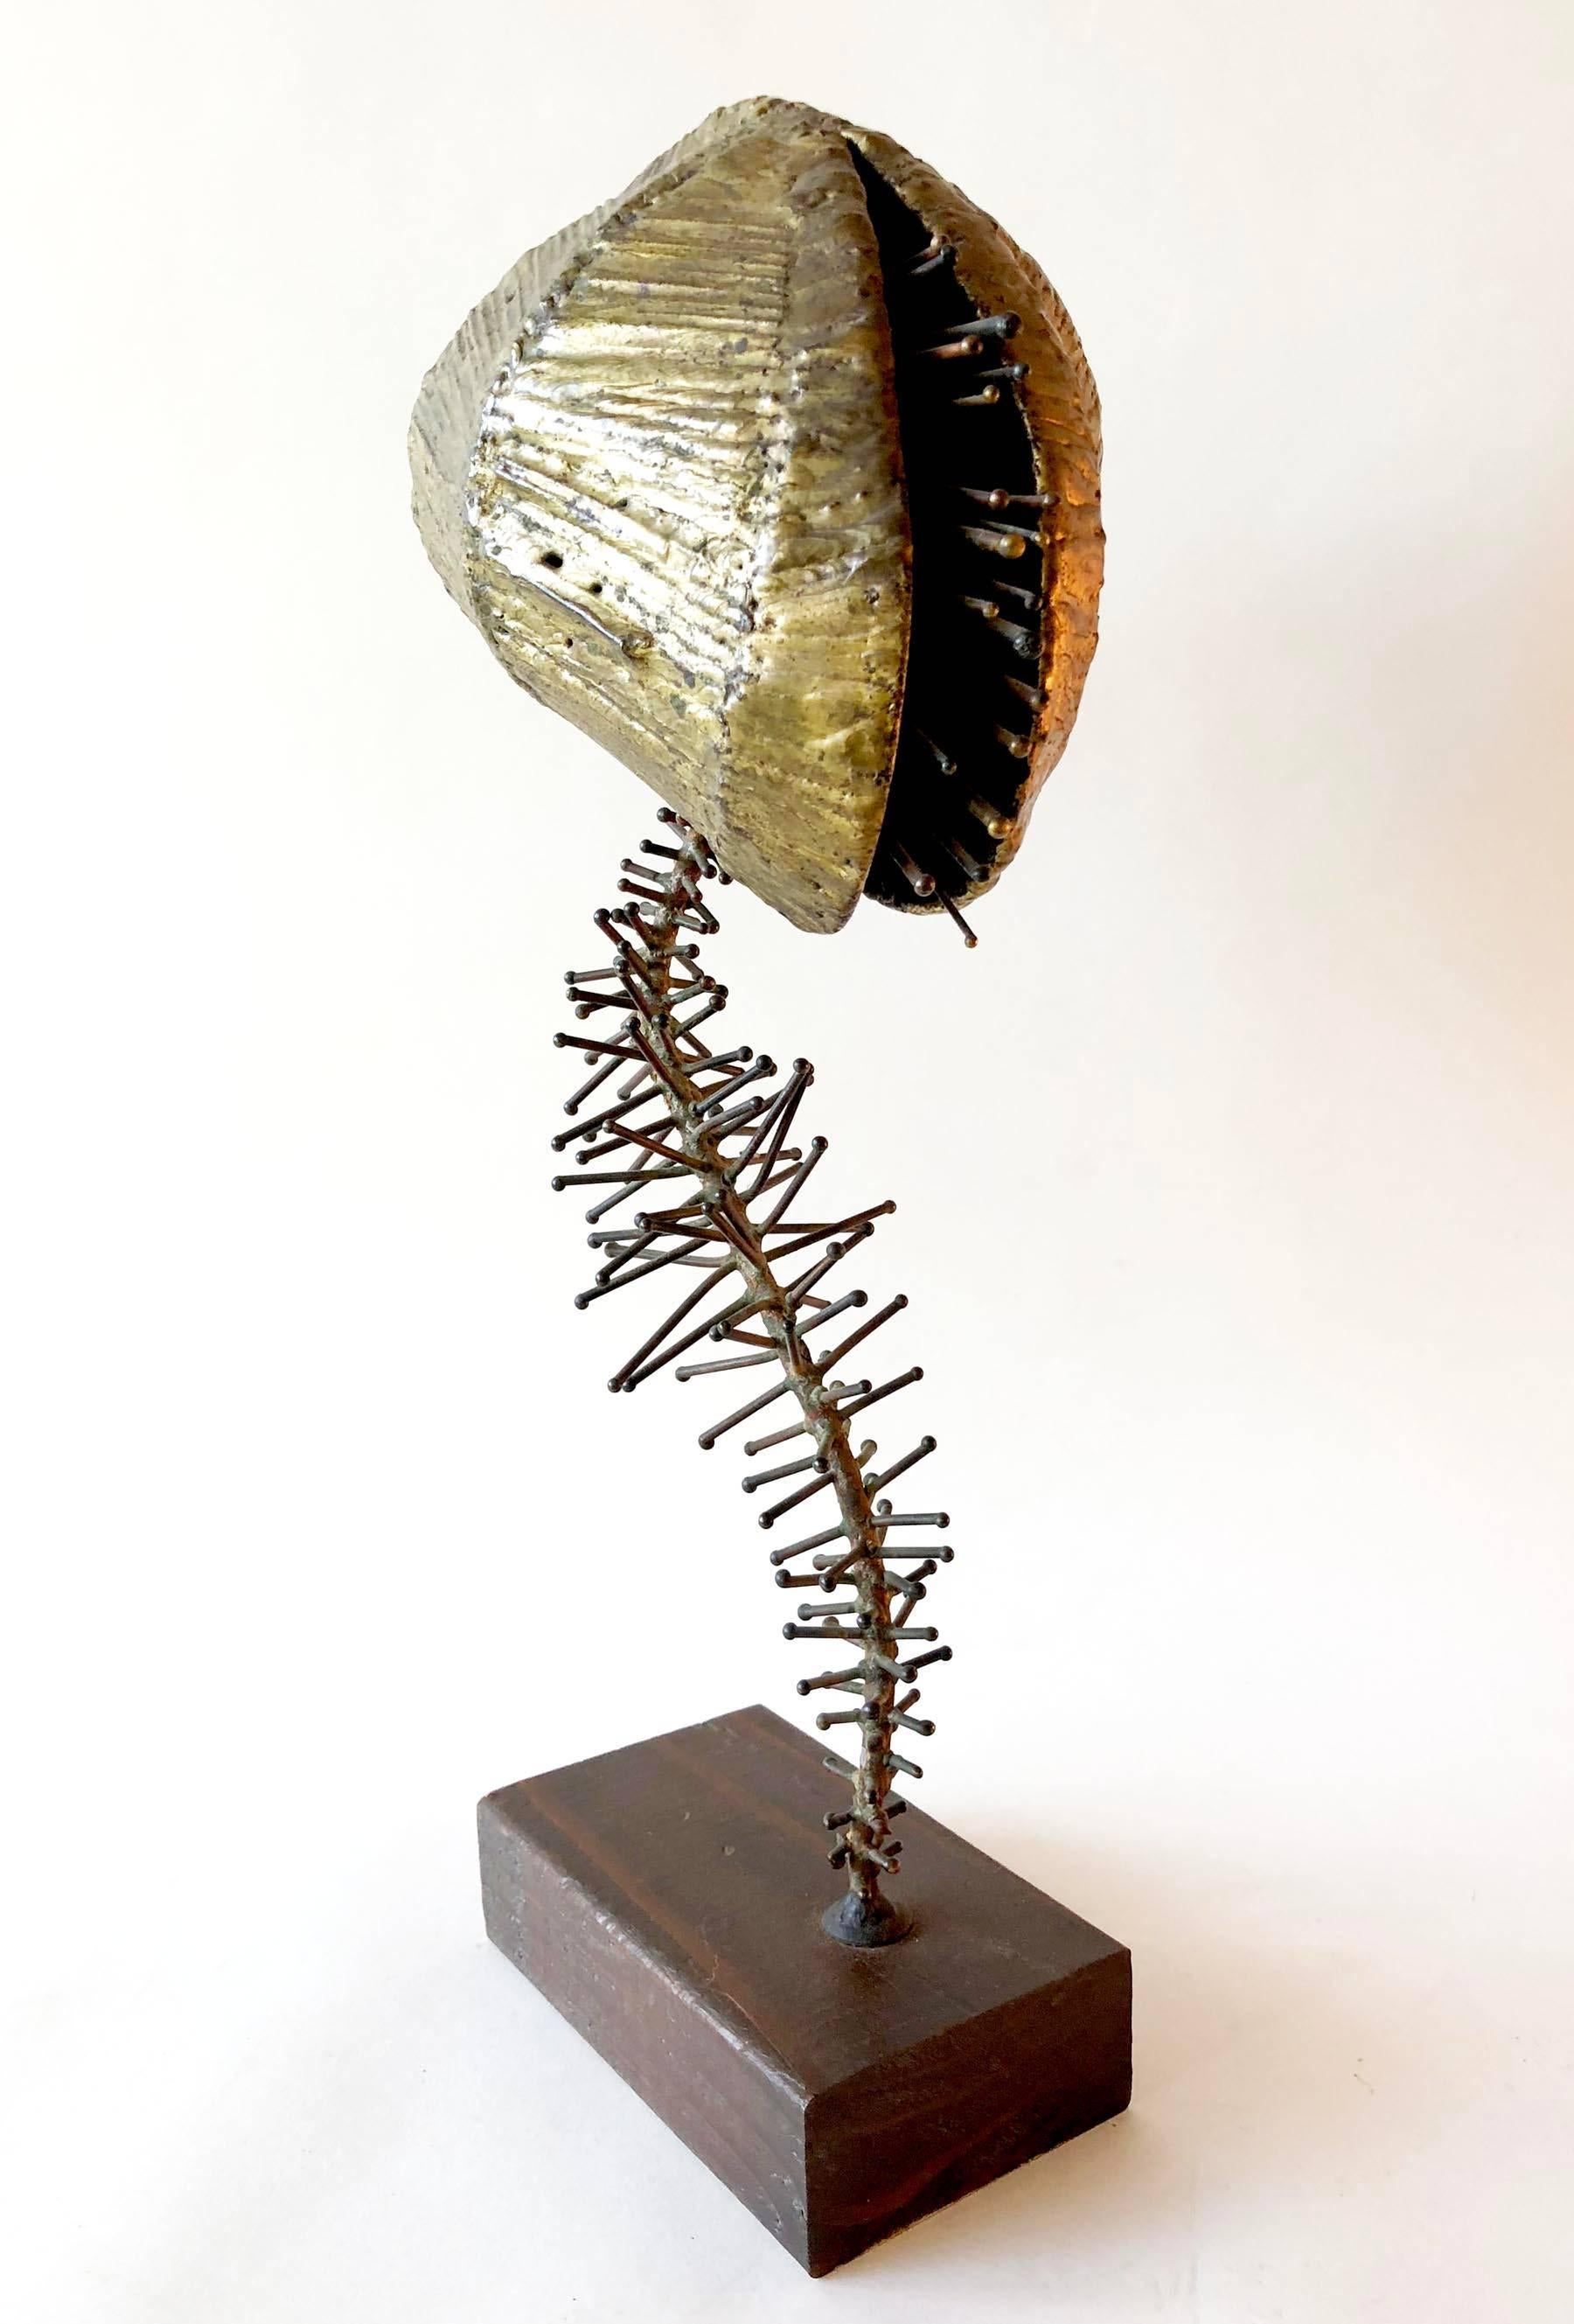 venus flytrap sculpture